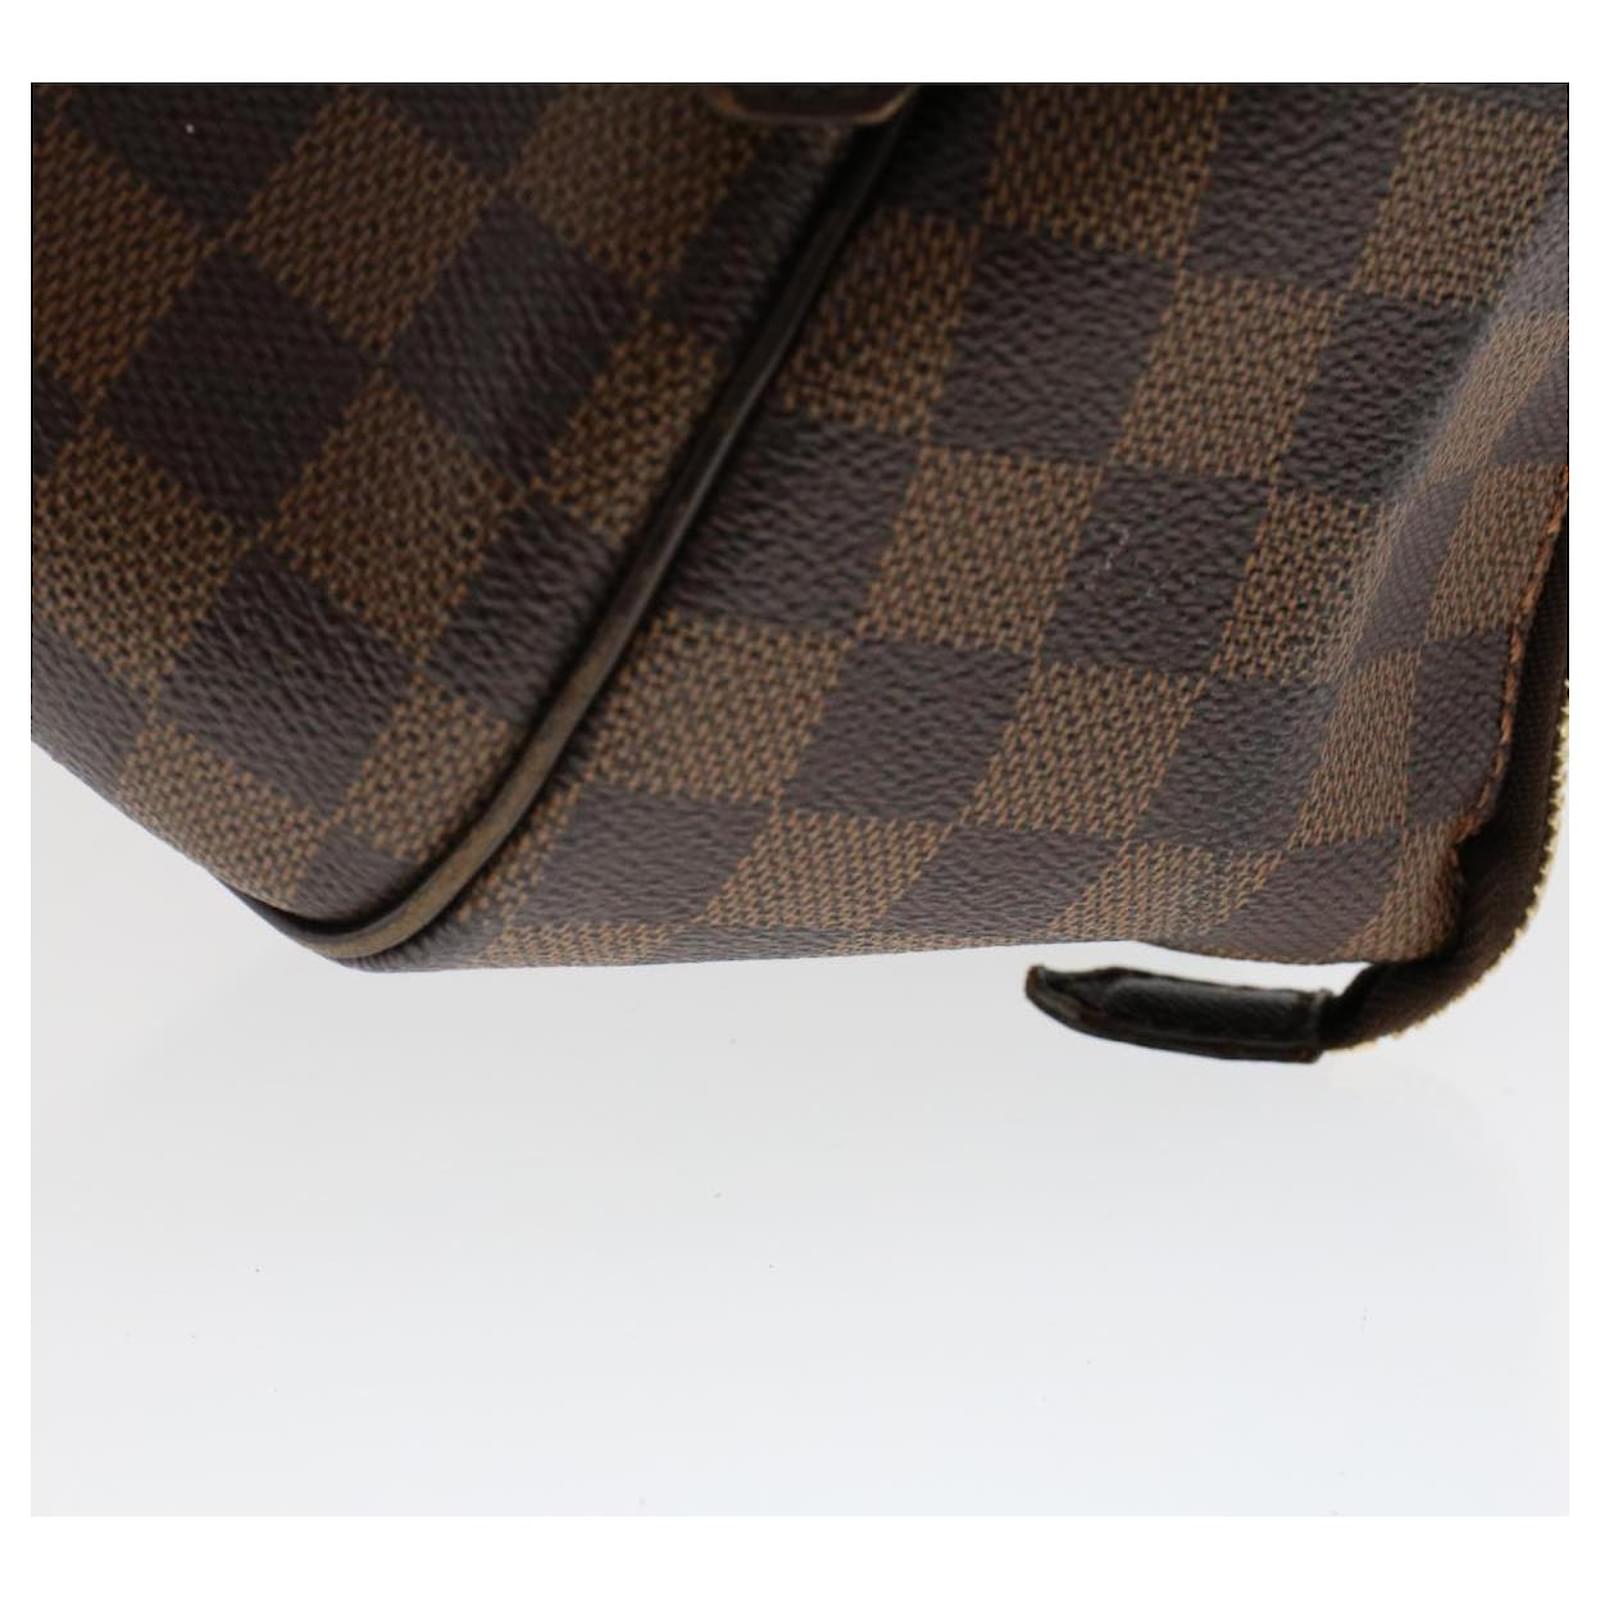 Louis Vuitton, Bags, Preowned Authentic Luis Vuitton Verona Pm Damier Ebene  Canvas Damie Ebene Bag